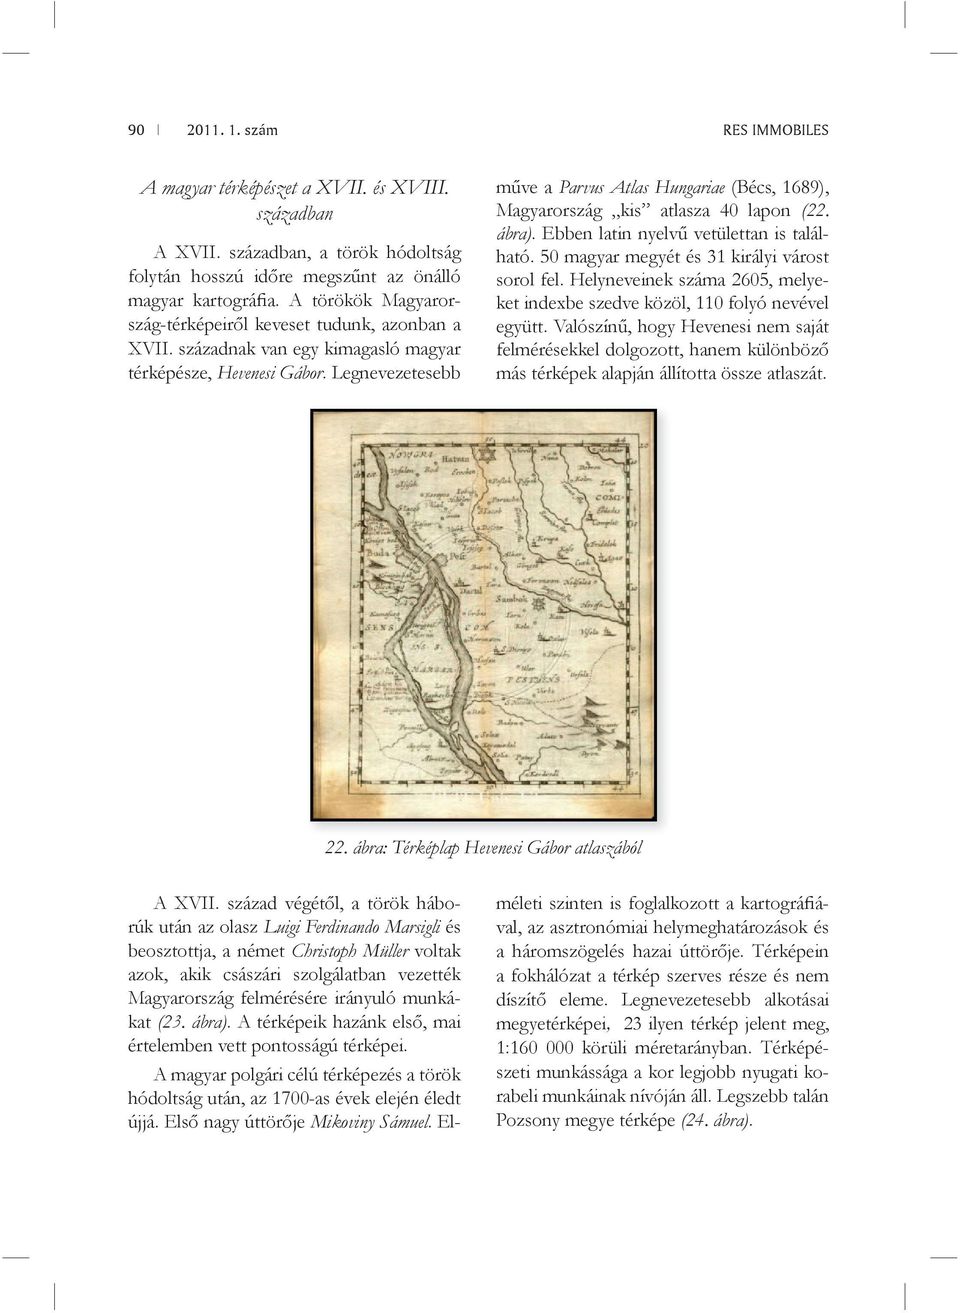 Legnevezetesebb műve a Parvus Atlas Hungariae (Bécs, 1689), Magyarország kis atlasza 40 lapon (22. ábra). Ebben latin nyelvű vetülettan is található. 50 magyar megyét és 31 királyi várost sorol fel.